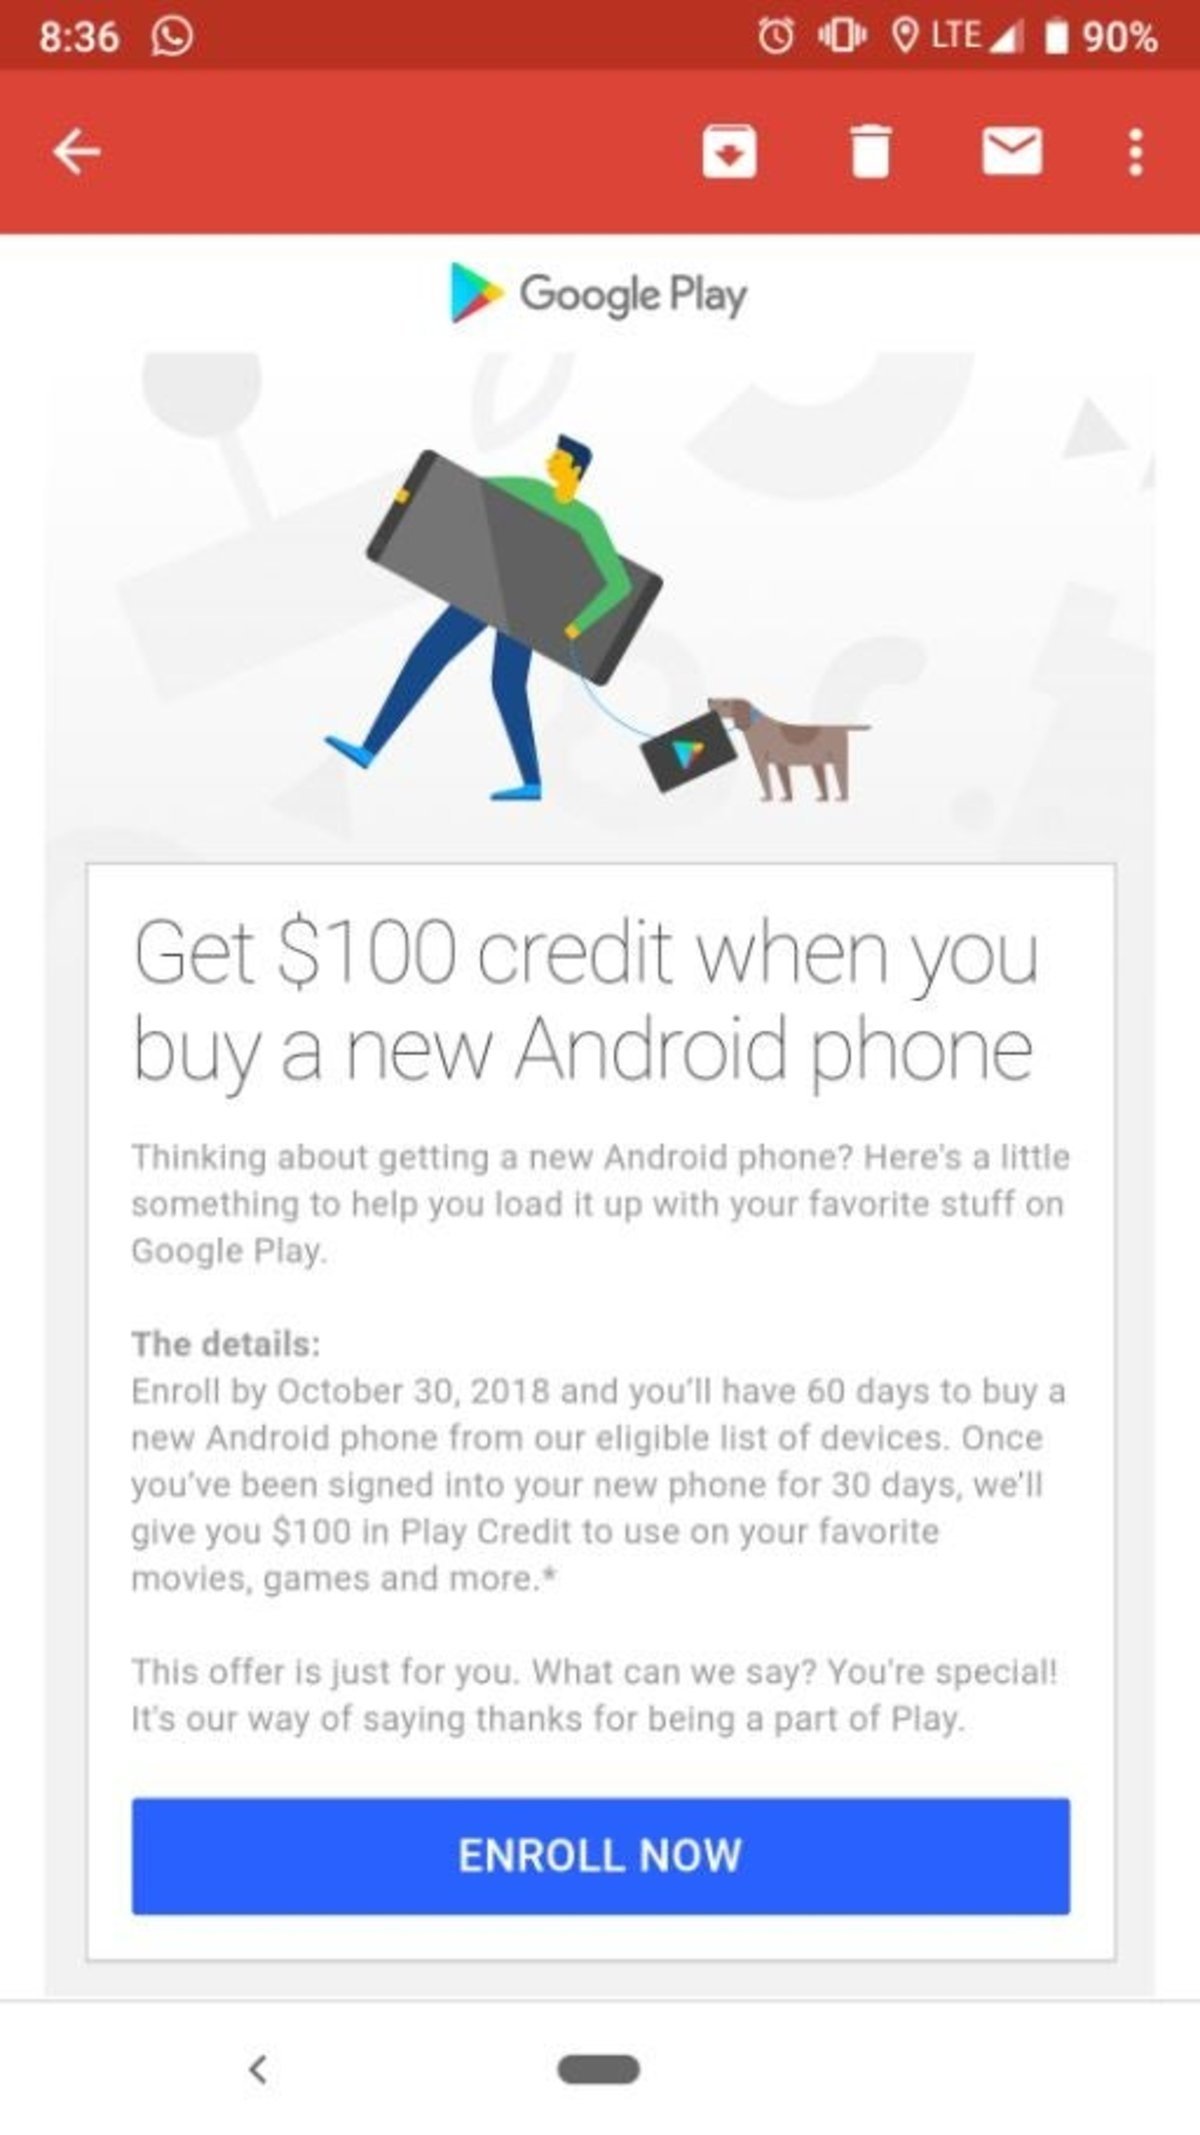 Si te compras un Android nuevo, Google podría regalarte hasta 100 dólares de crédito en Play Store